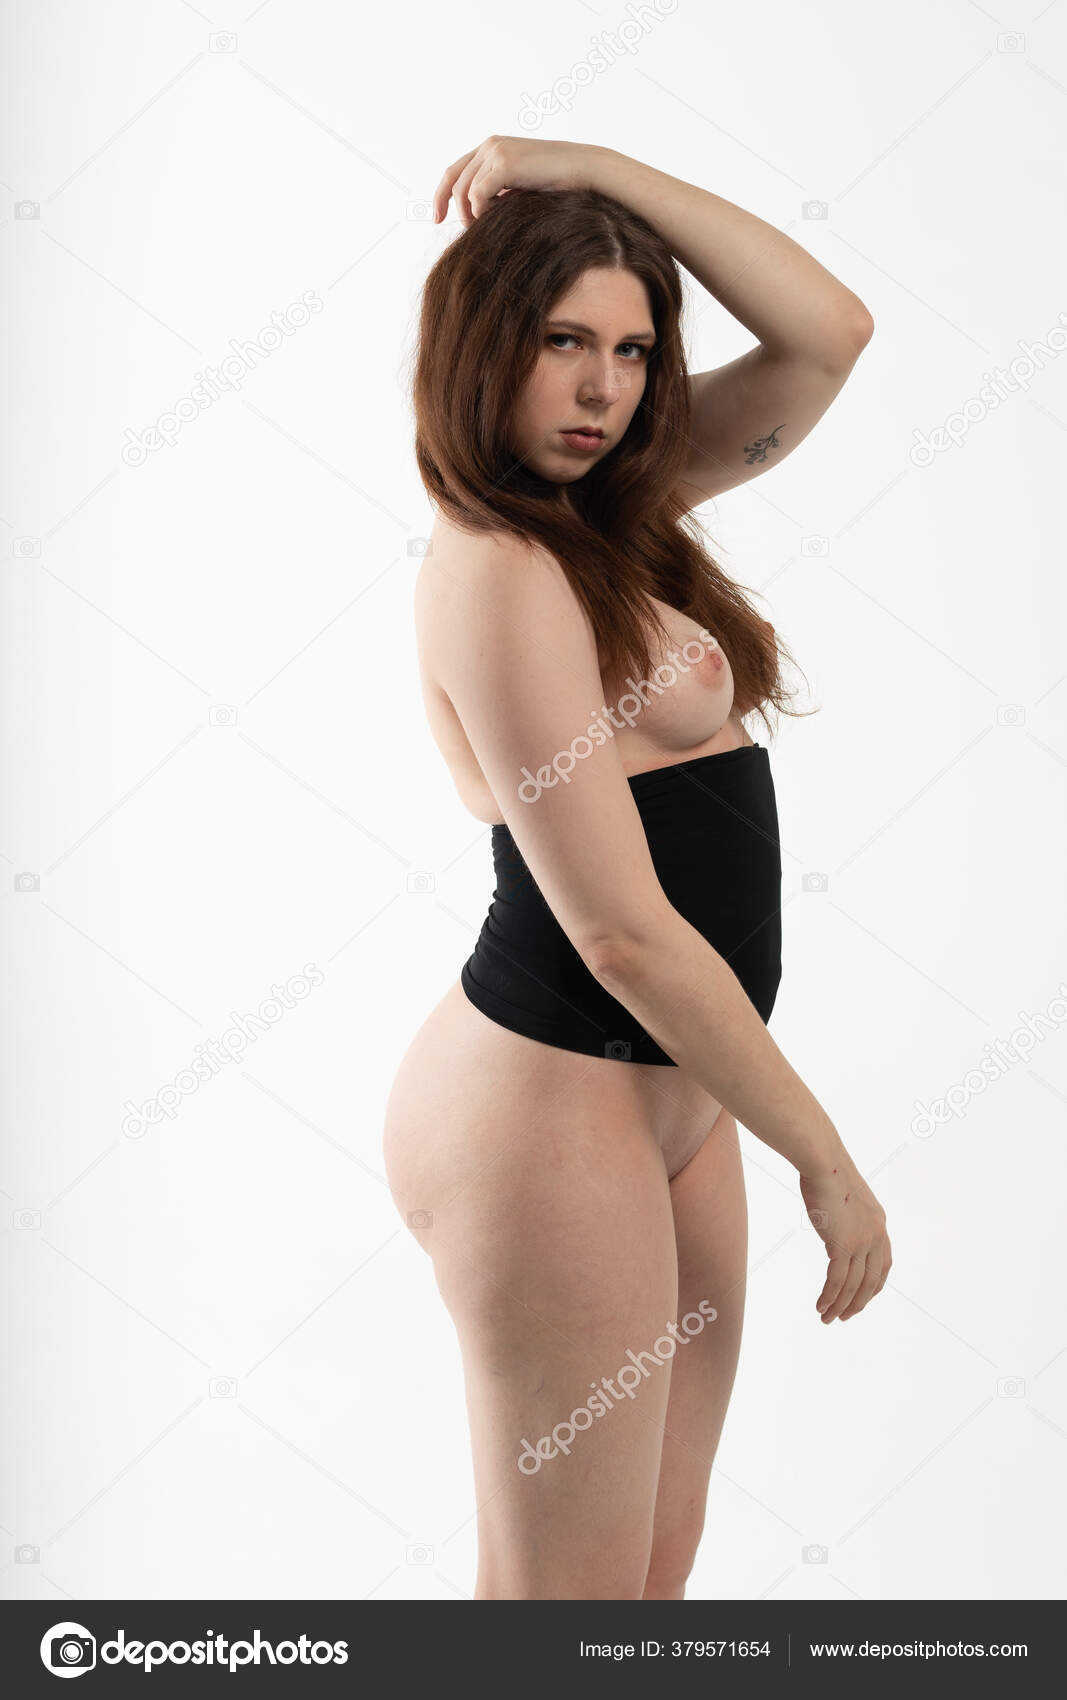 https://st4n.depositphotos.com/10086424/37957/i/1600/depositphotos_379571654-stock-photo-young-beautiful-girl-posing-nude.jpg